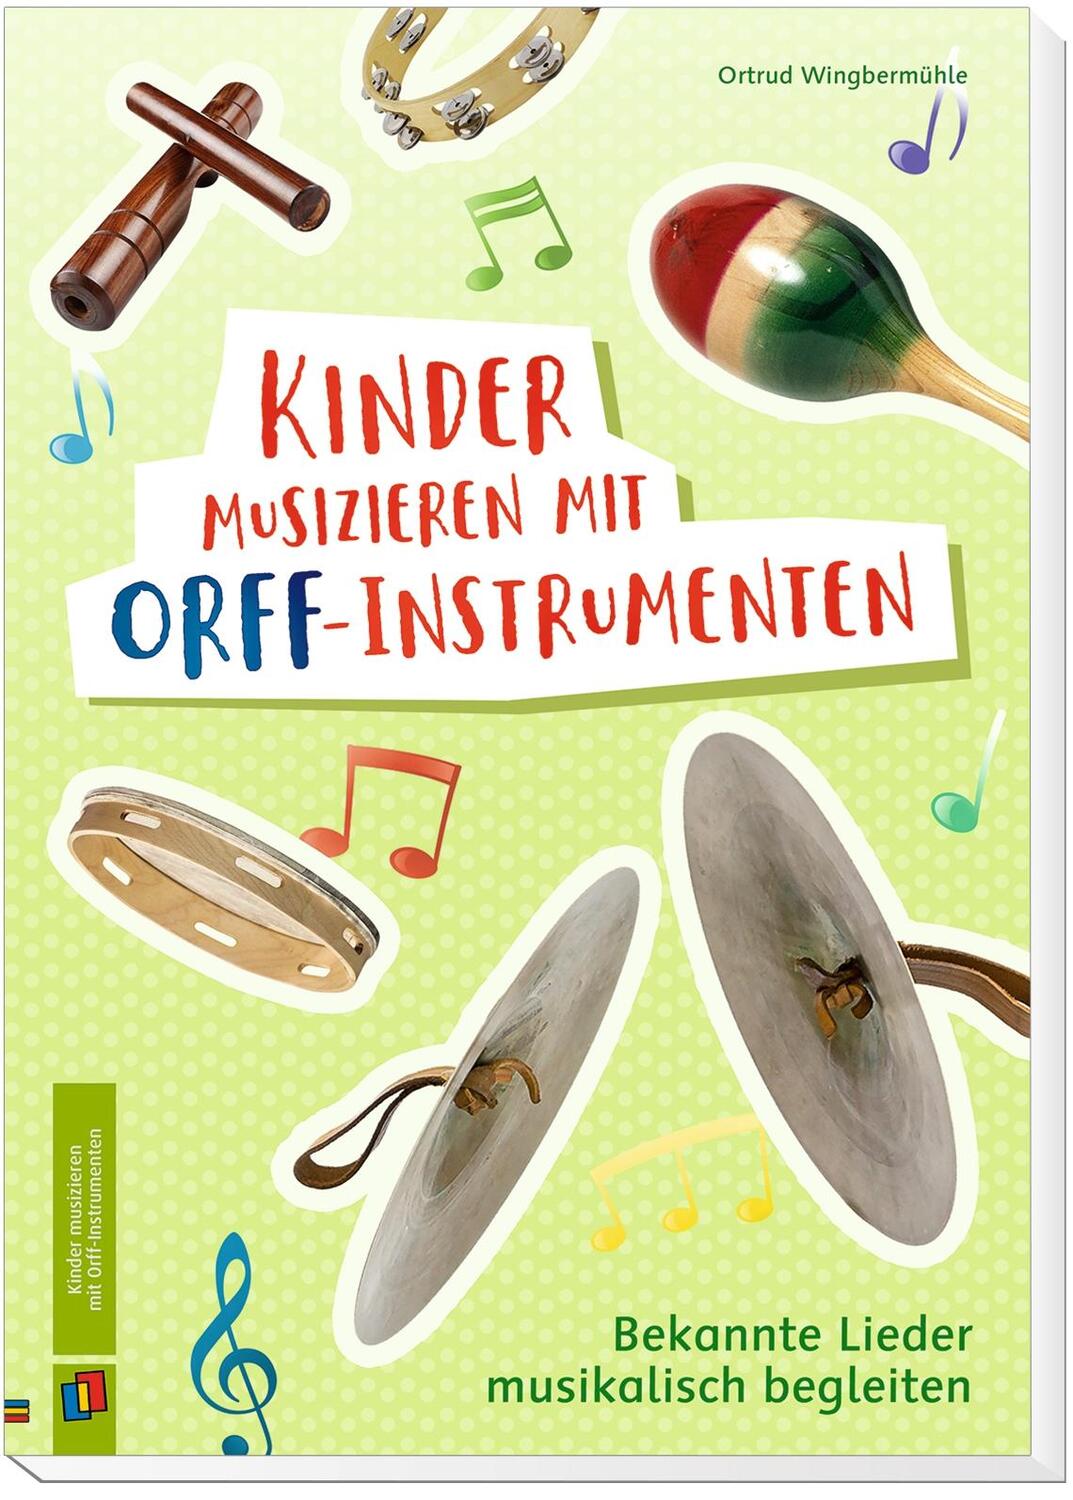 Bild: 9783834645944 | Kinder musizieren mit Orff-Instrumenten | Ortrud Wingbermühle | 2021